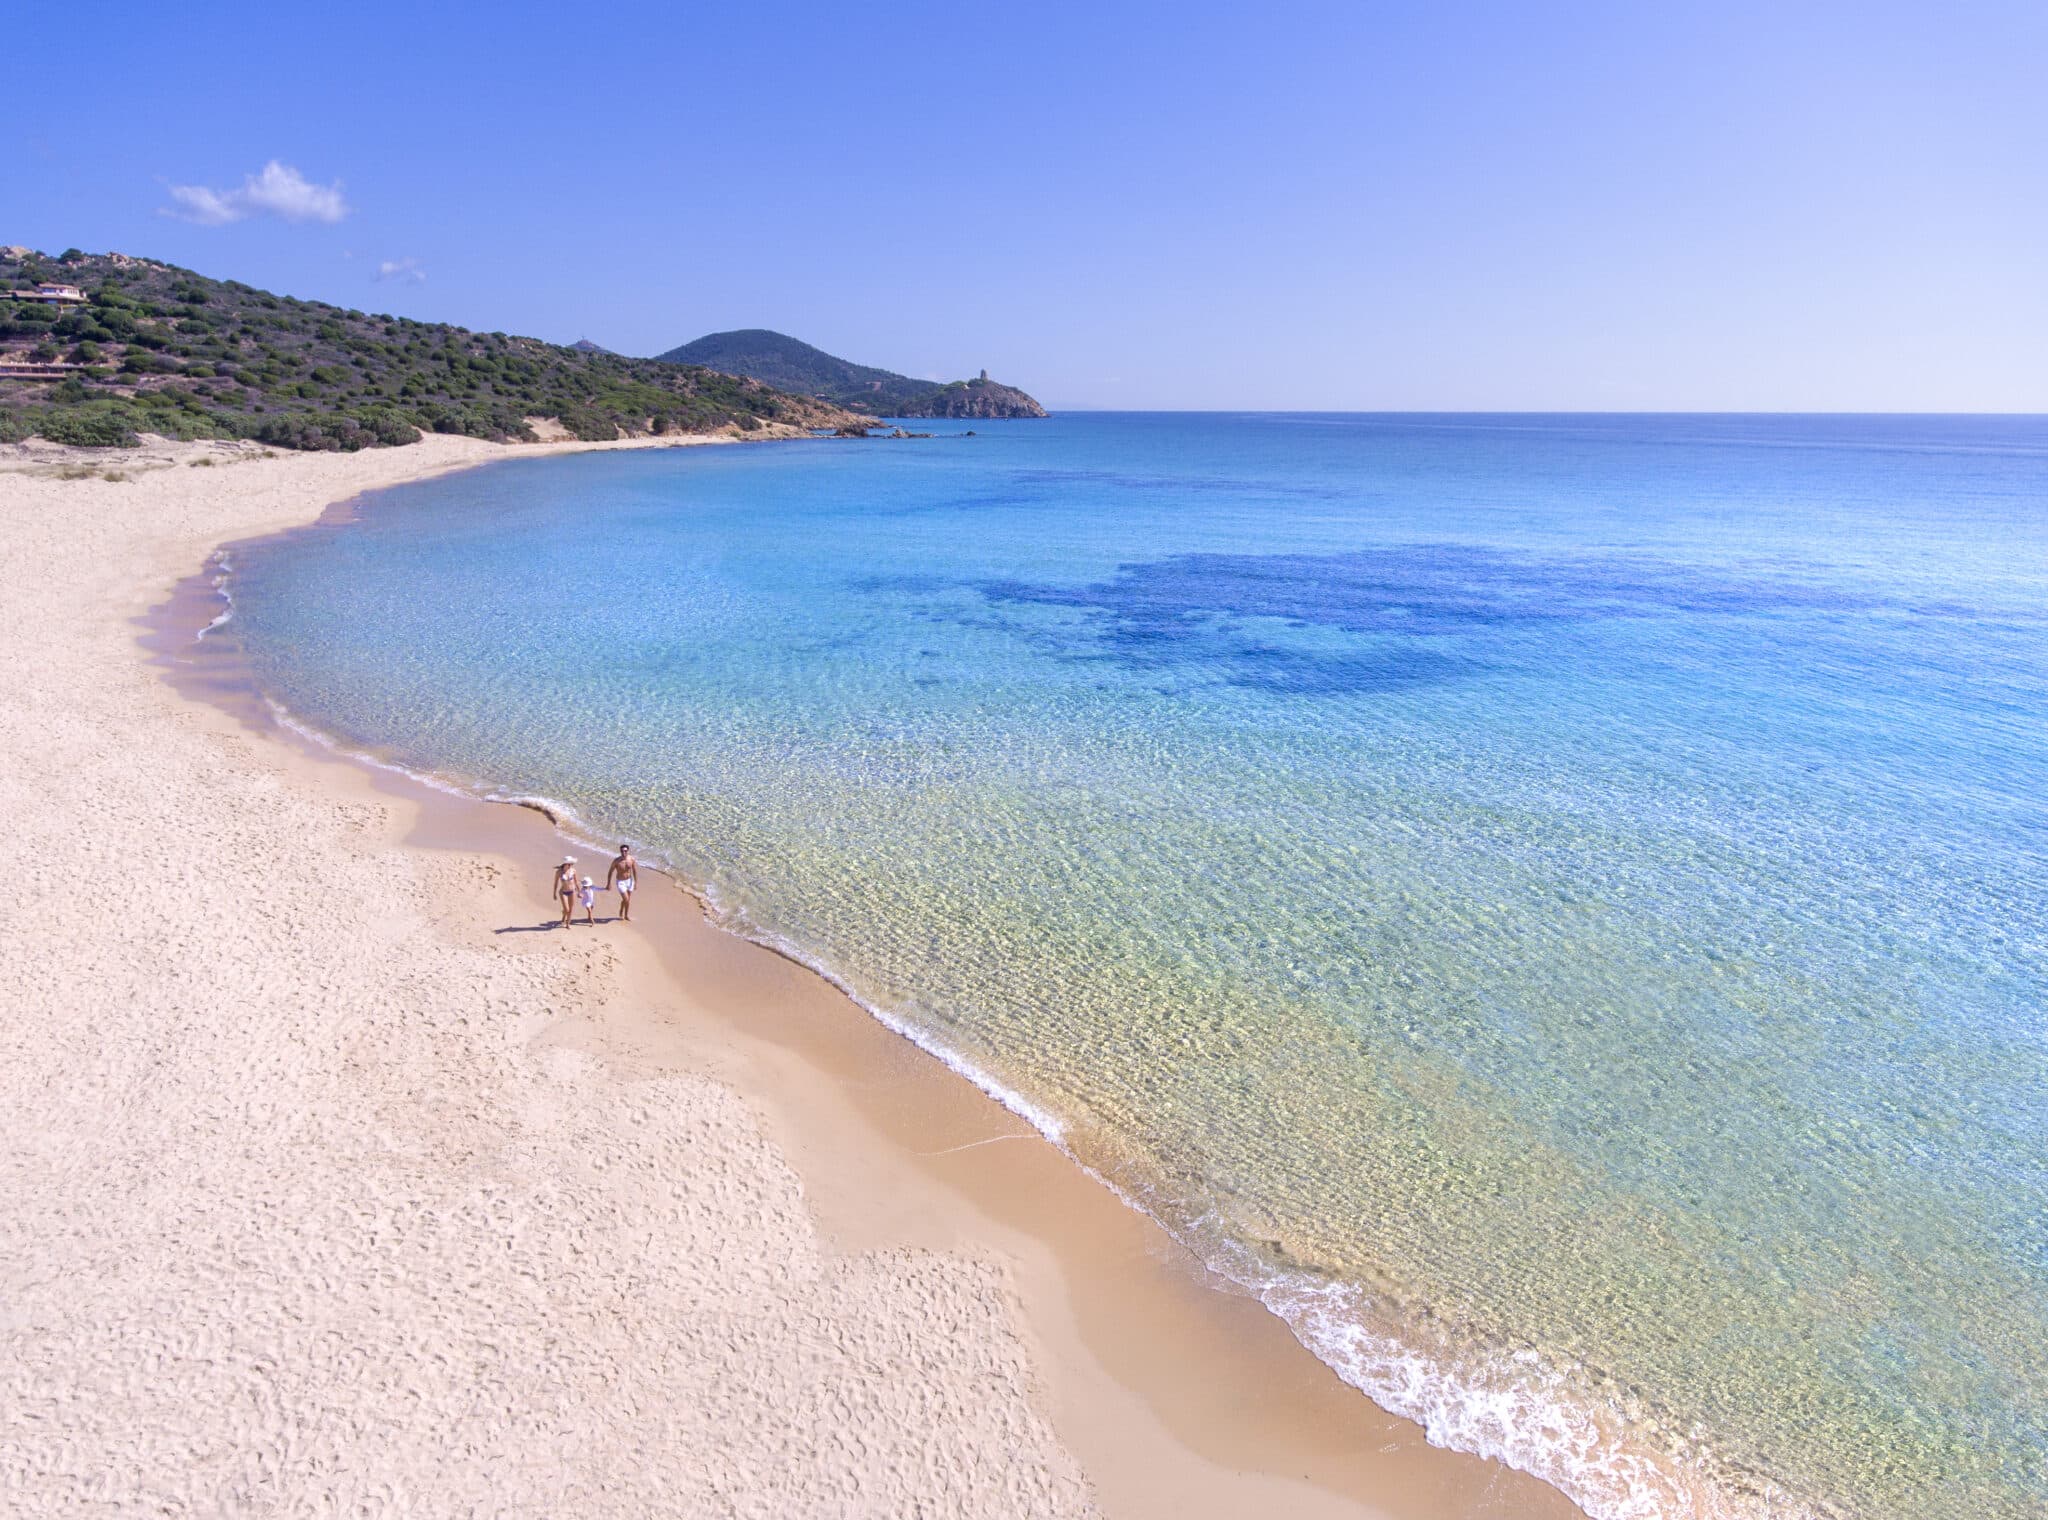 Це ідеальне місце для сімейного відпочинку на Сардинії. Курорт Chia Laguna на престижній міжнародній премії World Travel Awards 2020 здобув перемогу одразу у двох категоріях World Leading Beach Family Resort та Mediterranean's Leading Family Resort.